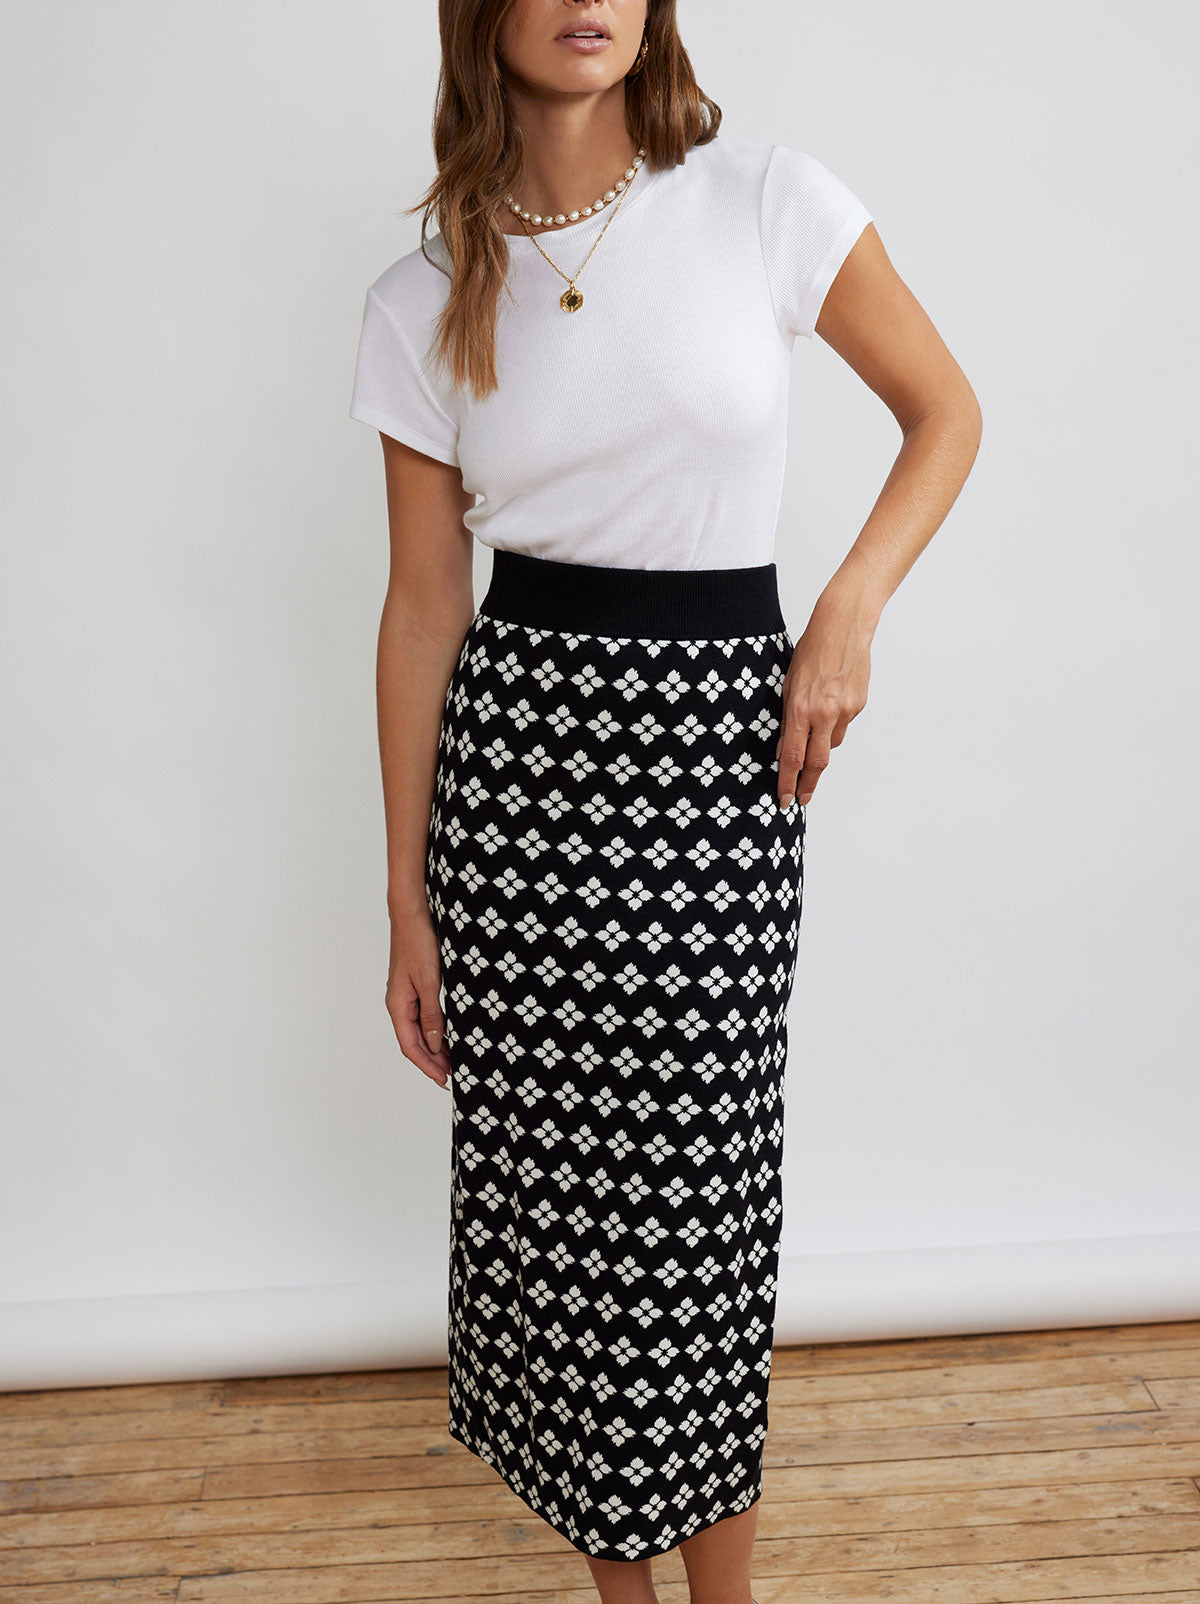 Delphine Black Floral Knit Midi Skirt By KITRI Studio